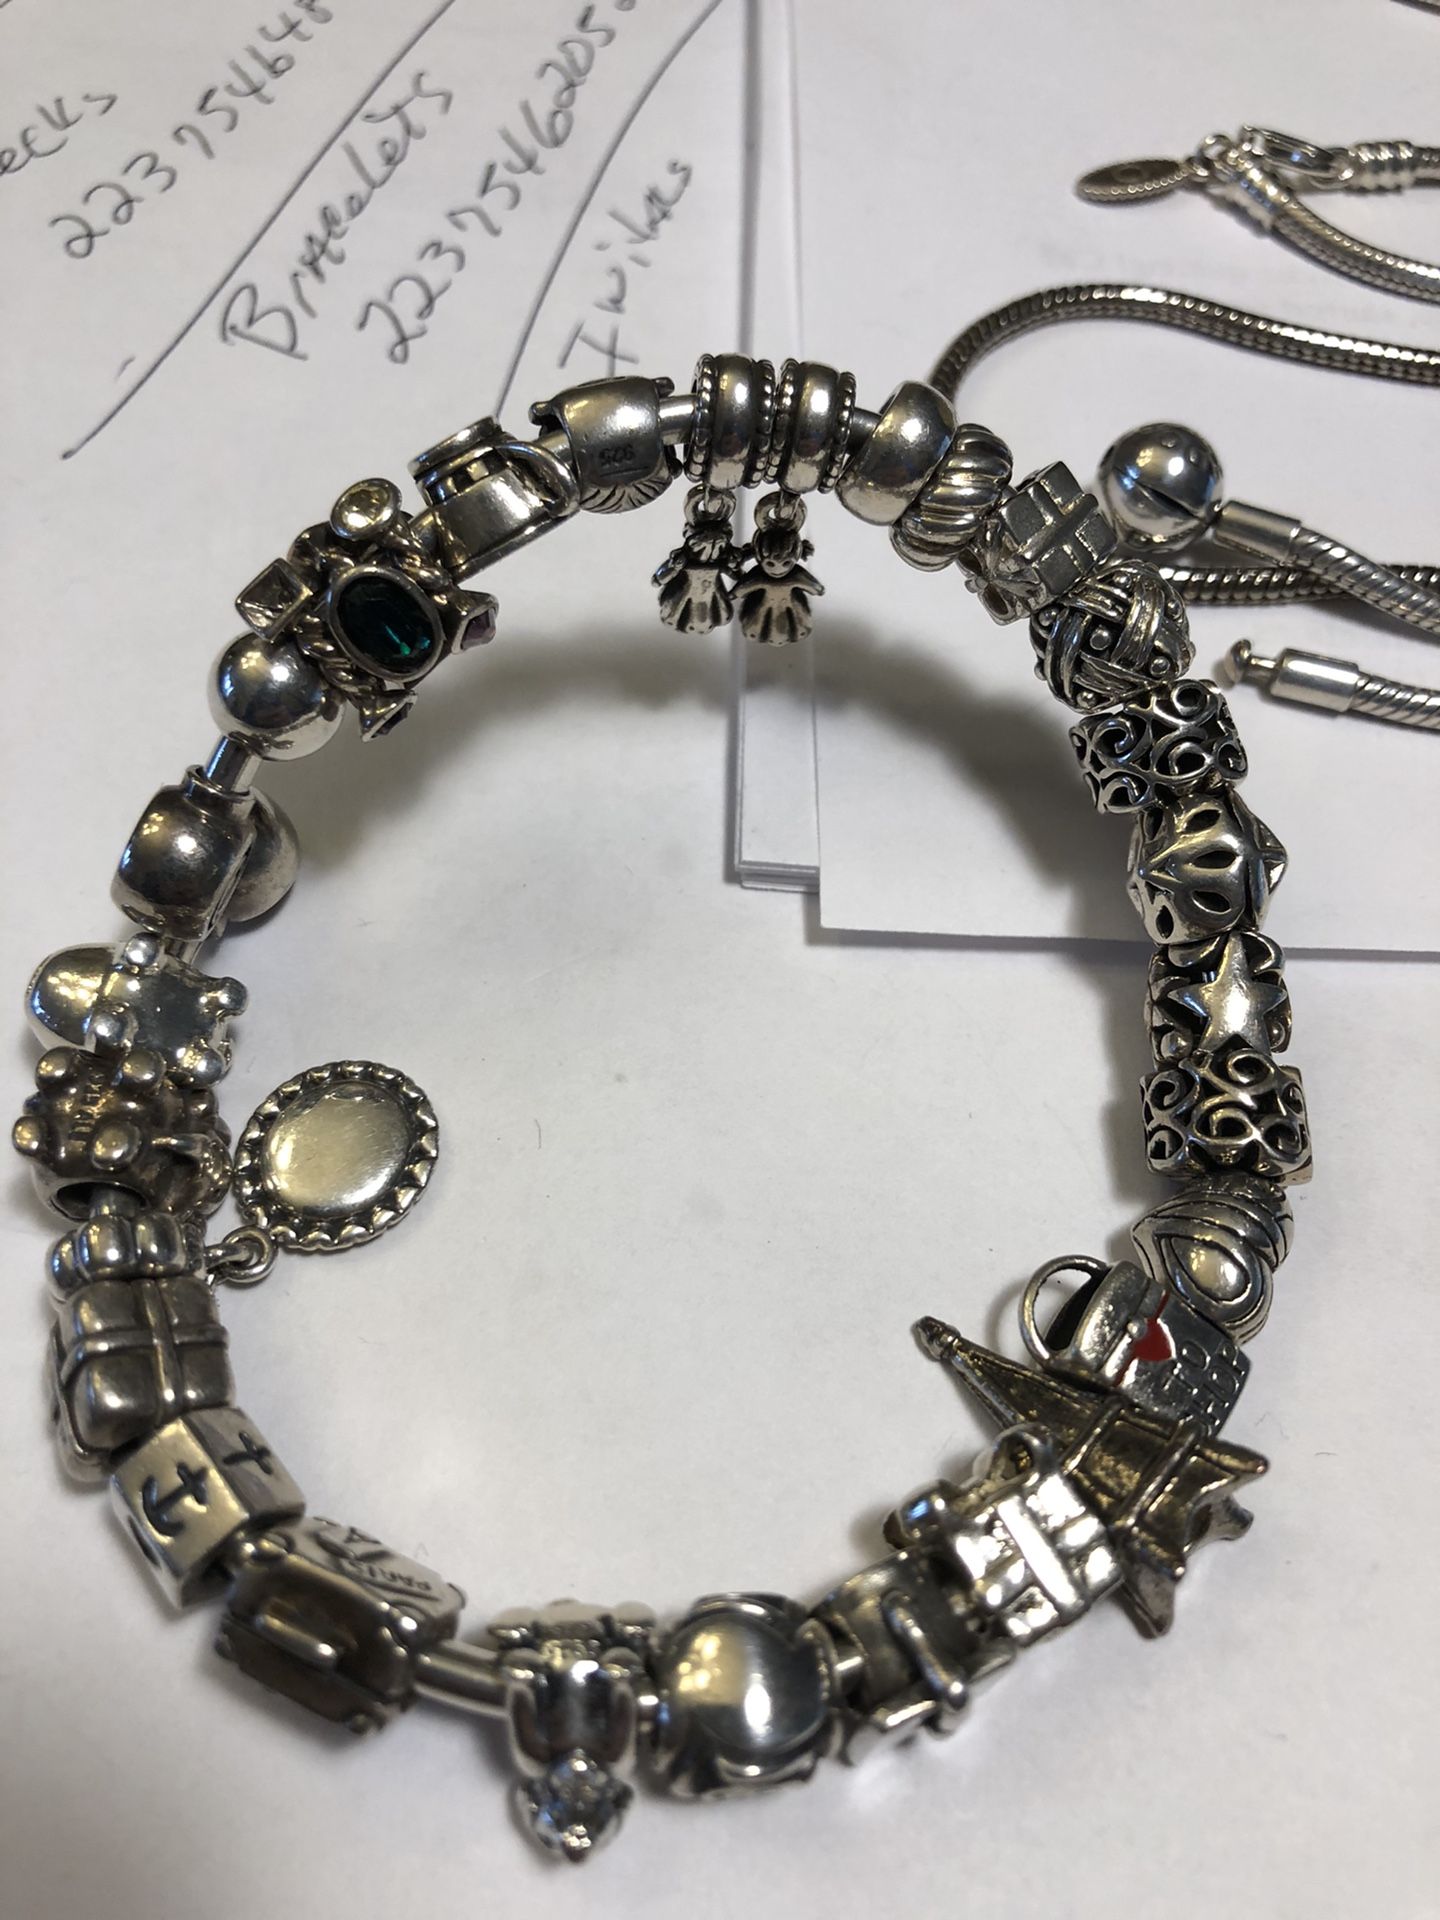 Pandora , Camilla beads & charms. Read description